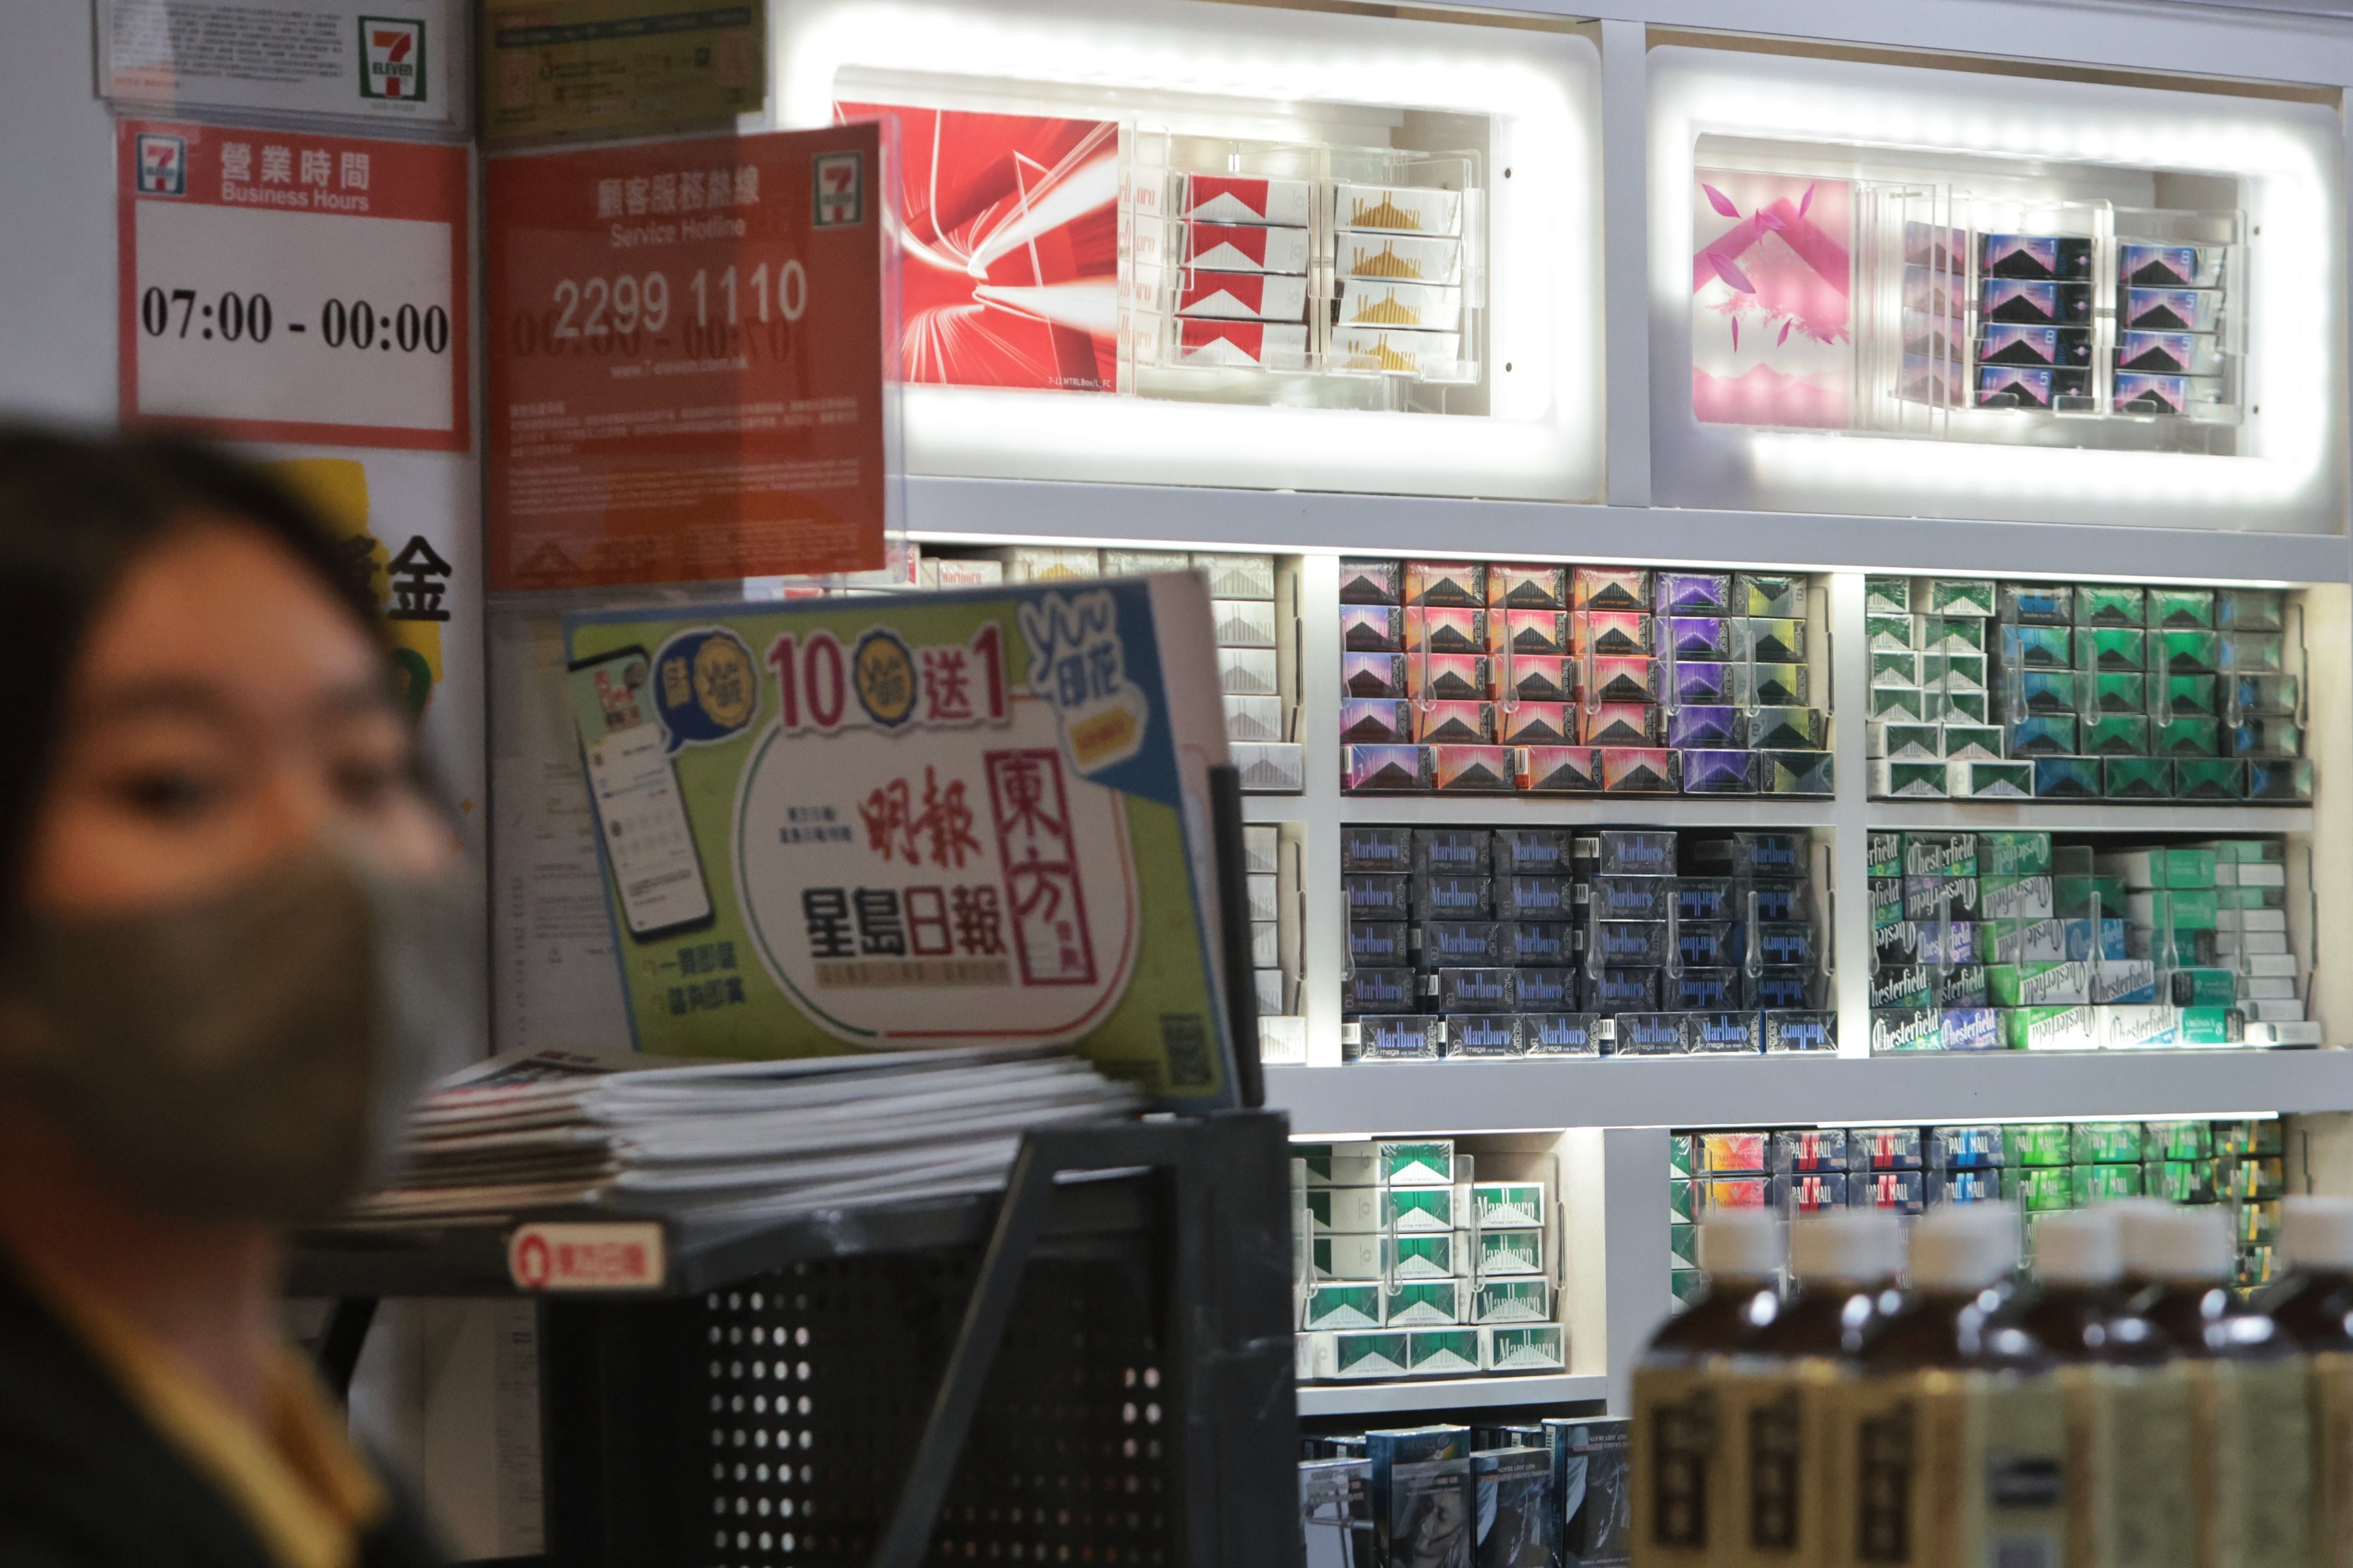 盧寵茂冀每年加煙草稅加強控煙 稱最終會規定某個日期後不能買煙